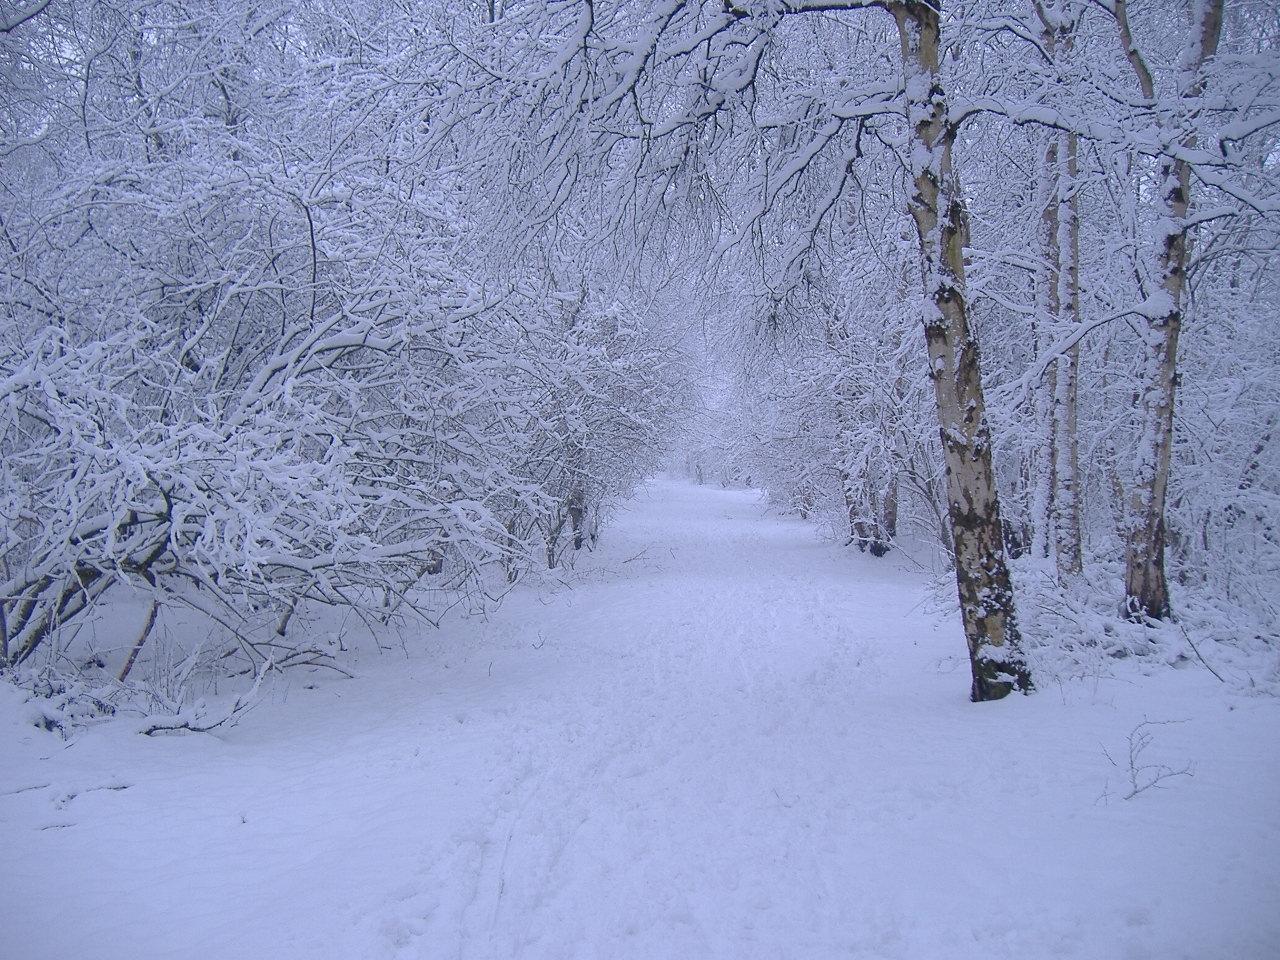 Winter scene Wallpaper. Image and nature wallpaper Winter scene